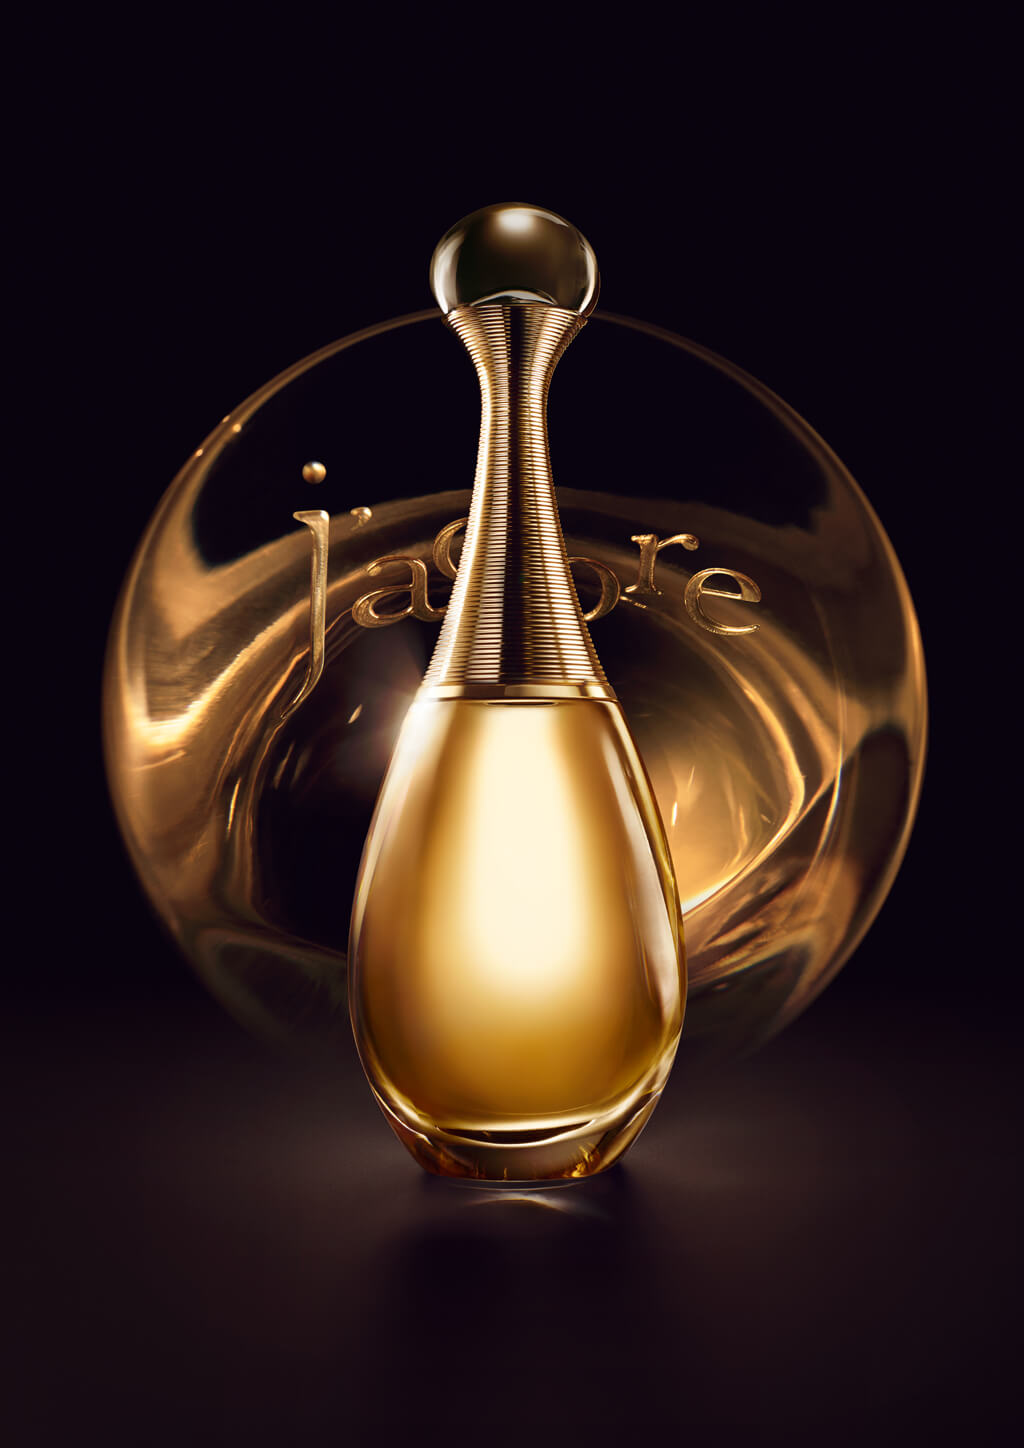 <p>Parfums Christian Dior : Brandmailer</p>
